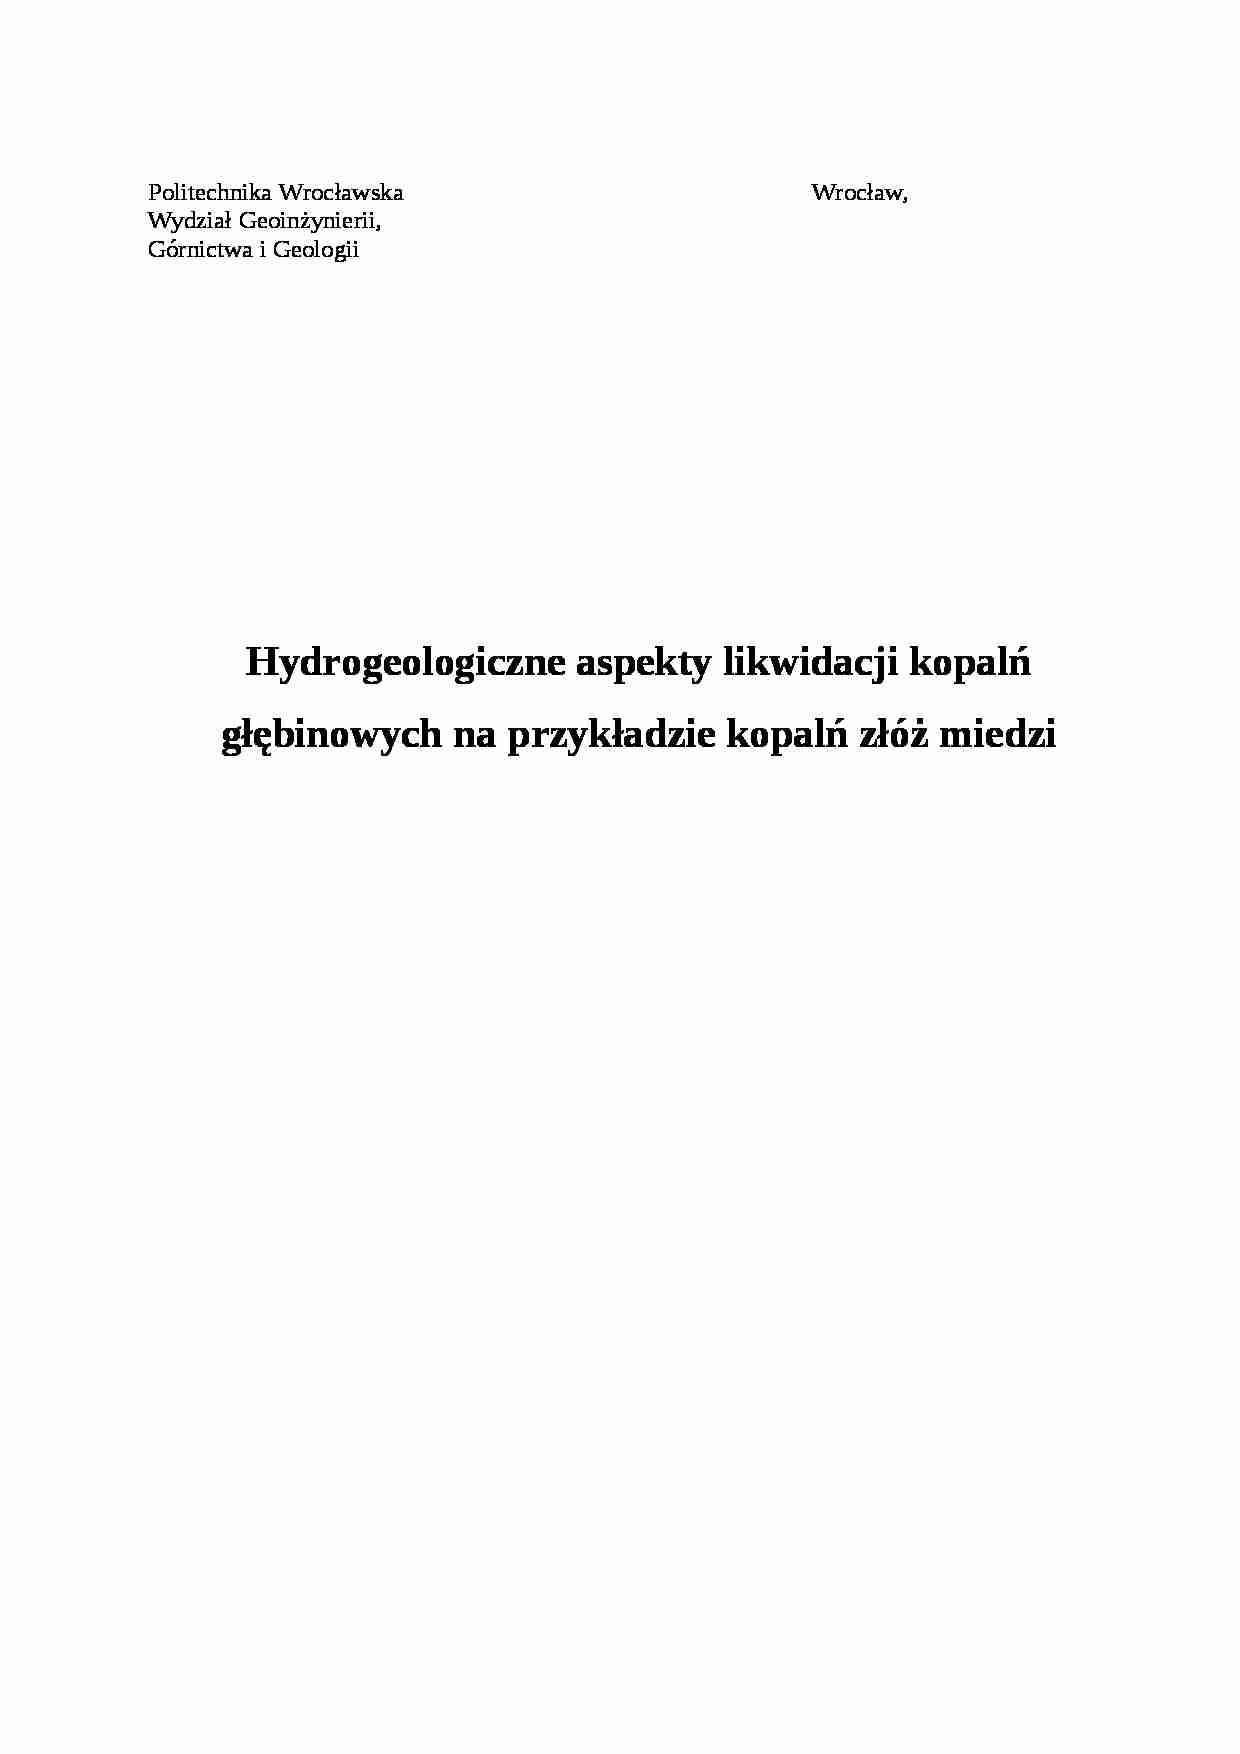 Hydrogeologiczne aspekty likwidacji kopalń głębinowych - strona 1